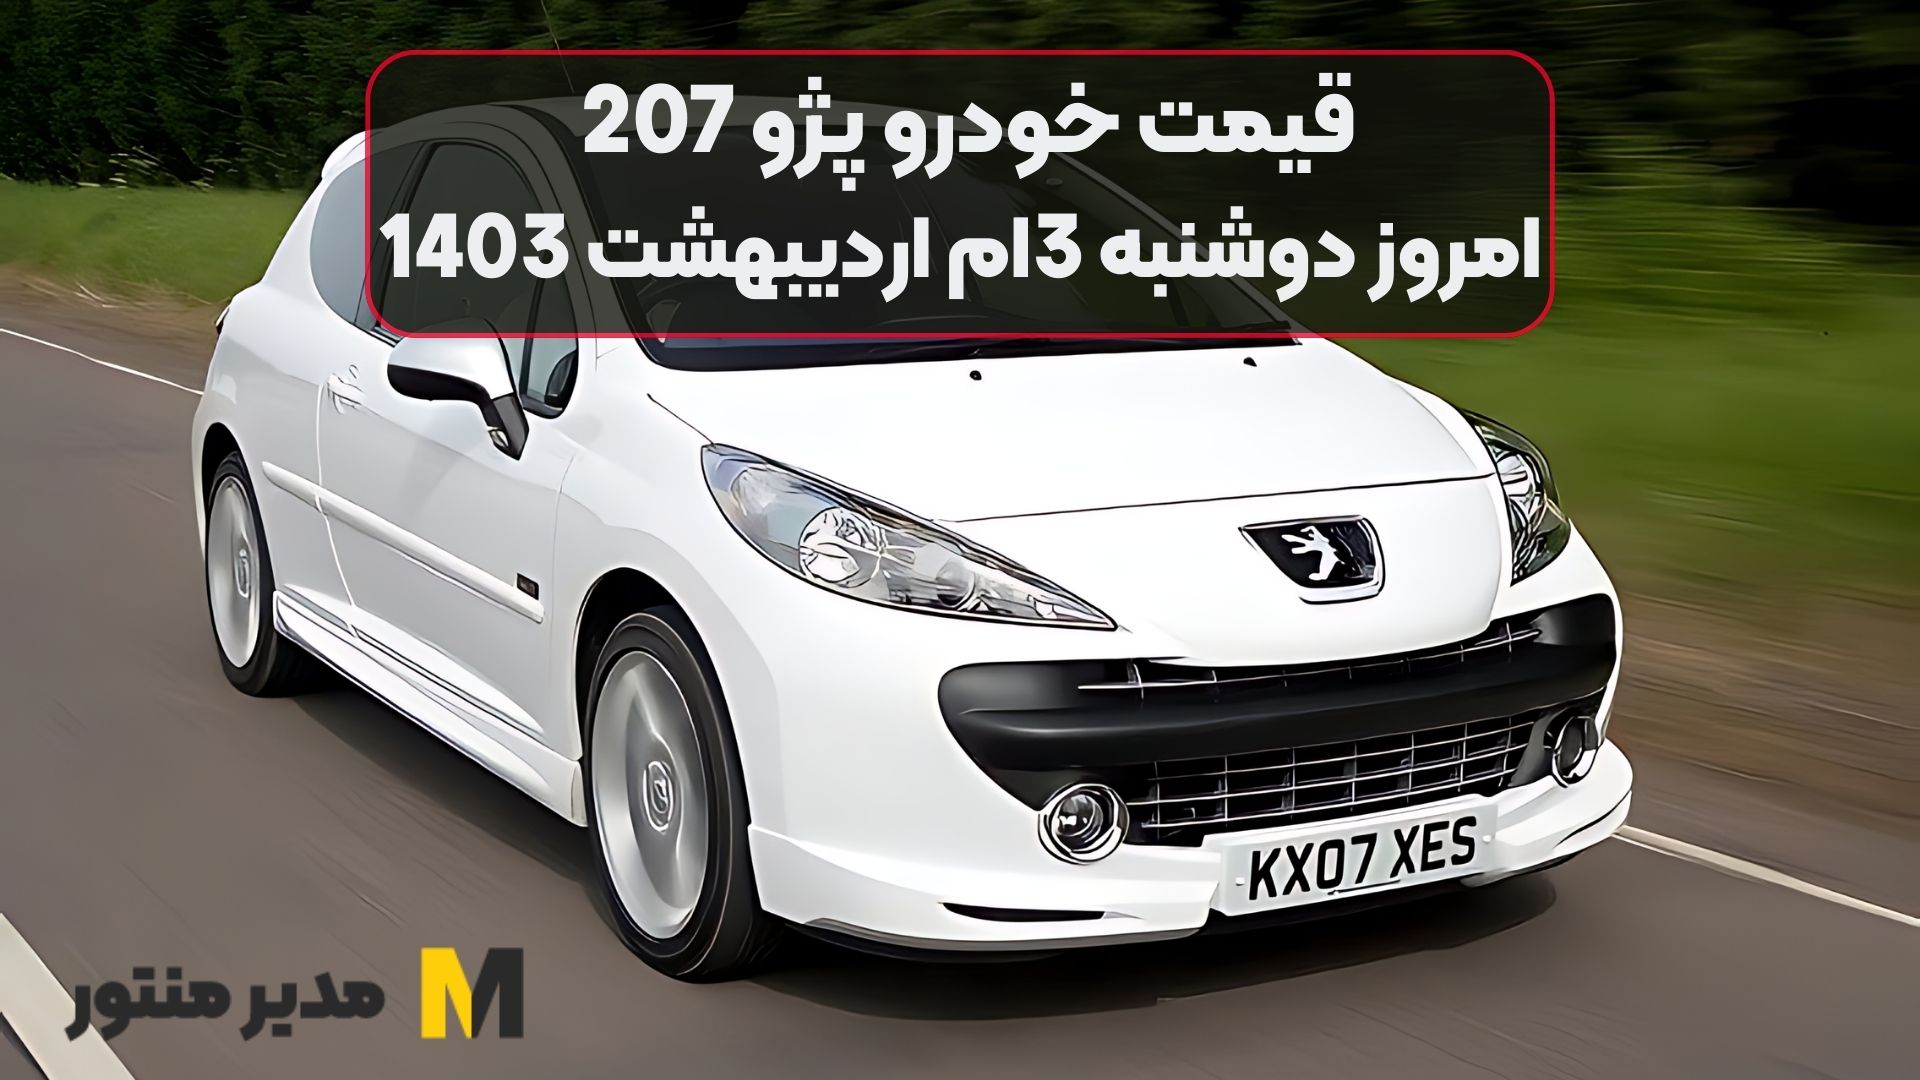 قیمت خودرو پژو 207 امروز دوشنبه 3ام اردیبهشت 1403